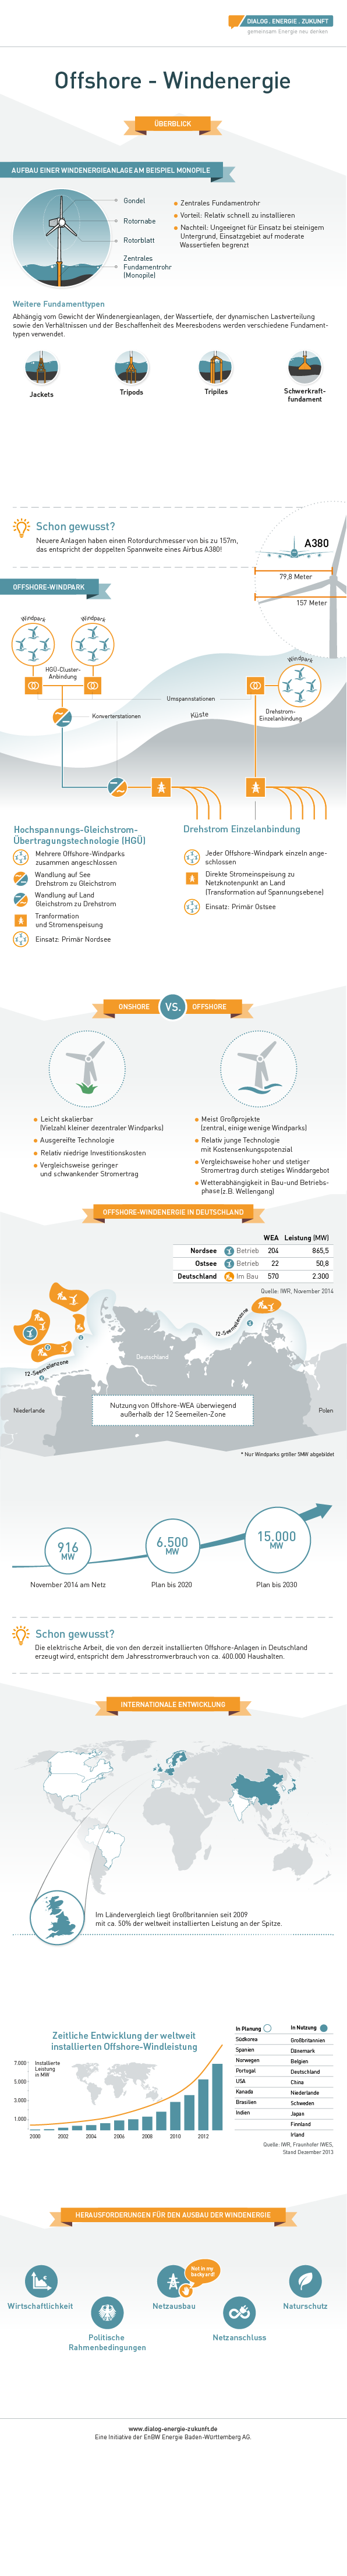 infografik offshore windkraft